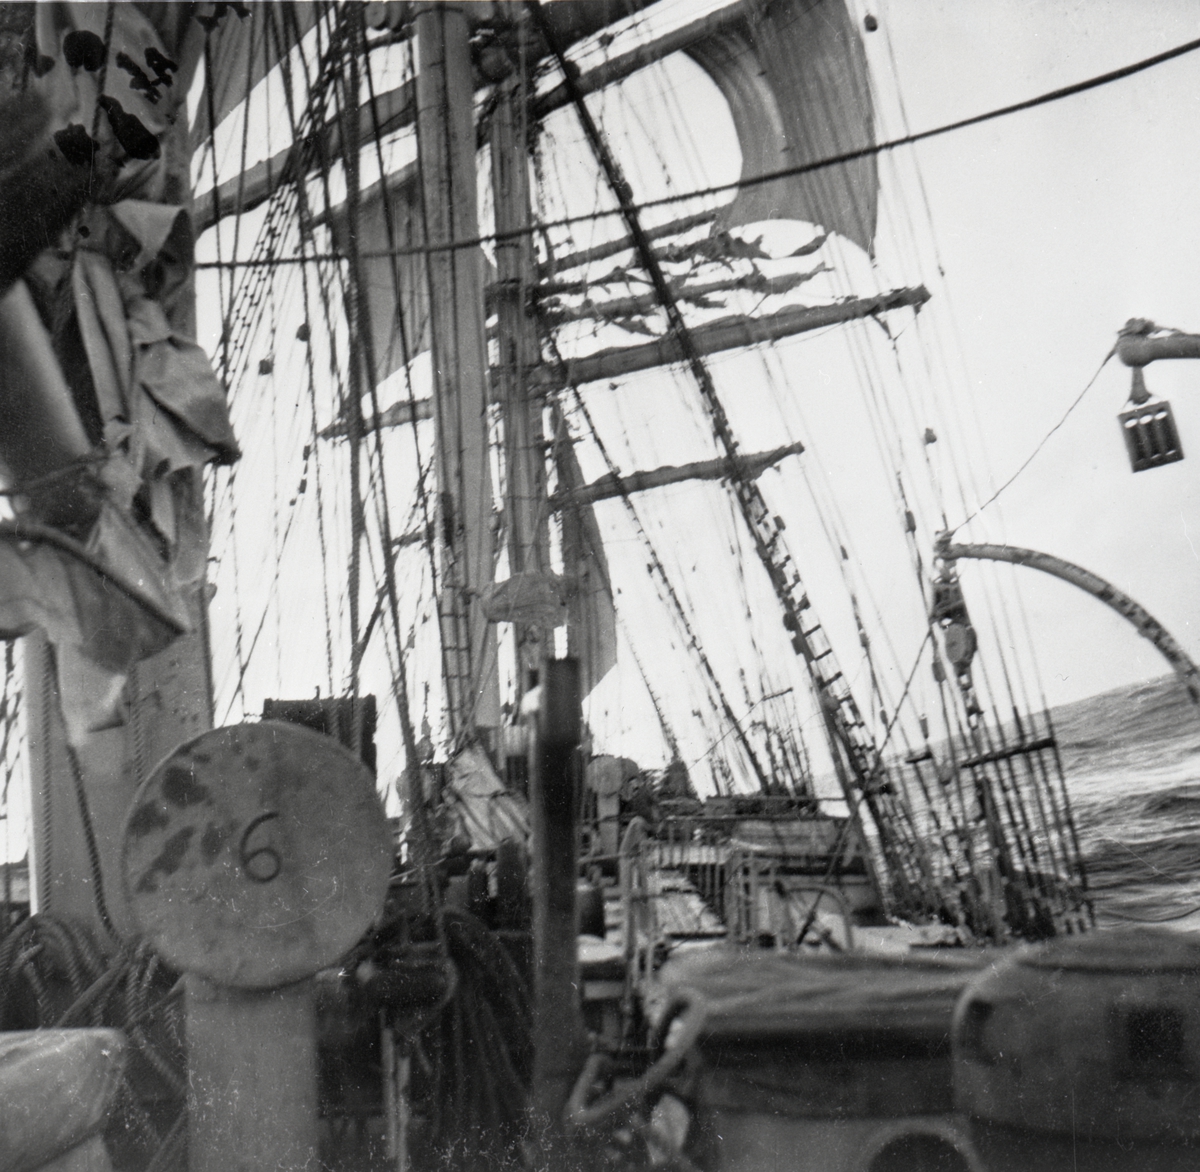 [från fotobeskrivningen:] "Storm på Nordatlanten. Barken PASSAT på resa Finland - Kapstaden 1947" "Refoto av foto inlånat från konstnärinnan Hilde Lütken-Bengtsson, Lund"